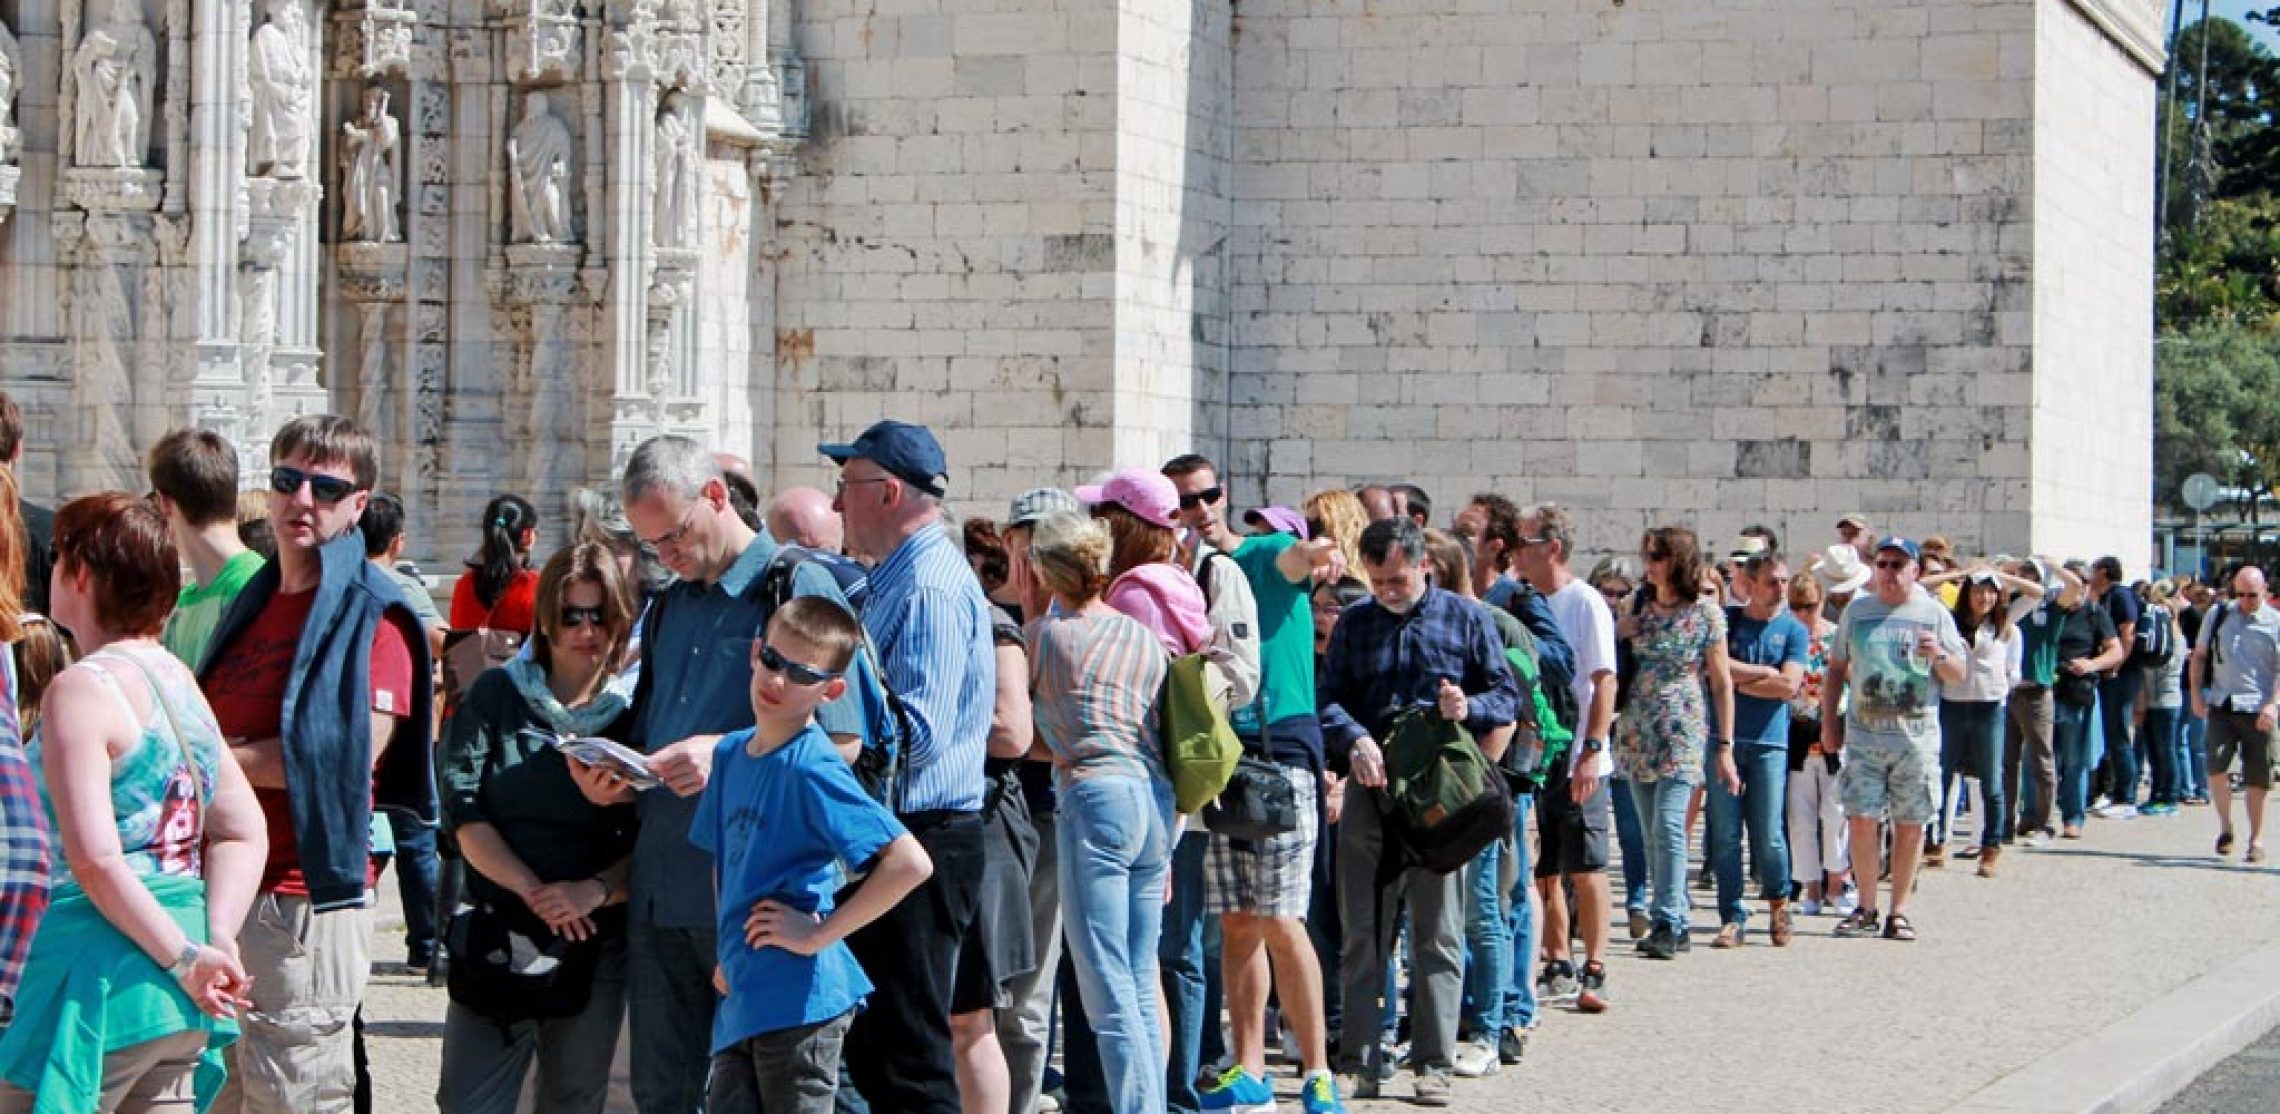 Längst ein gewohntes Bild: Touristen am Mosteiro dos Jerónimos, Lissabon